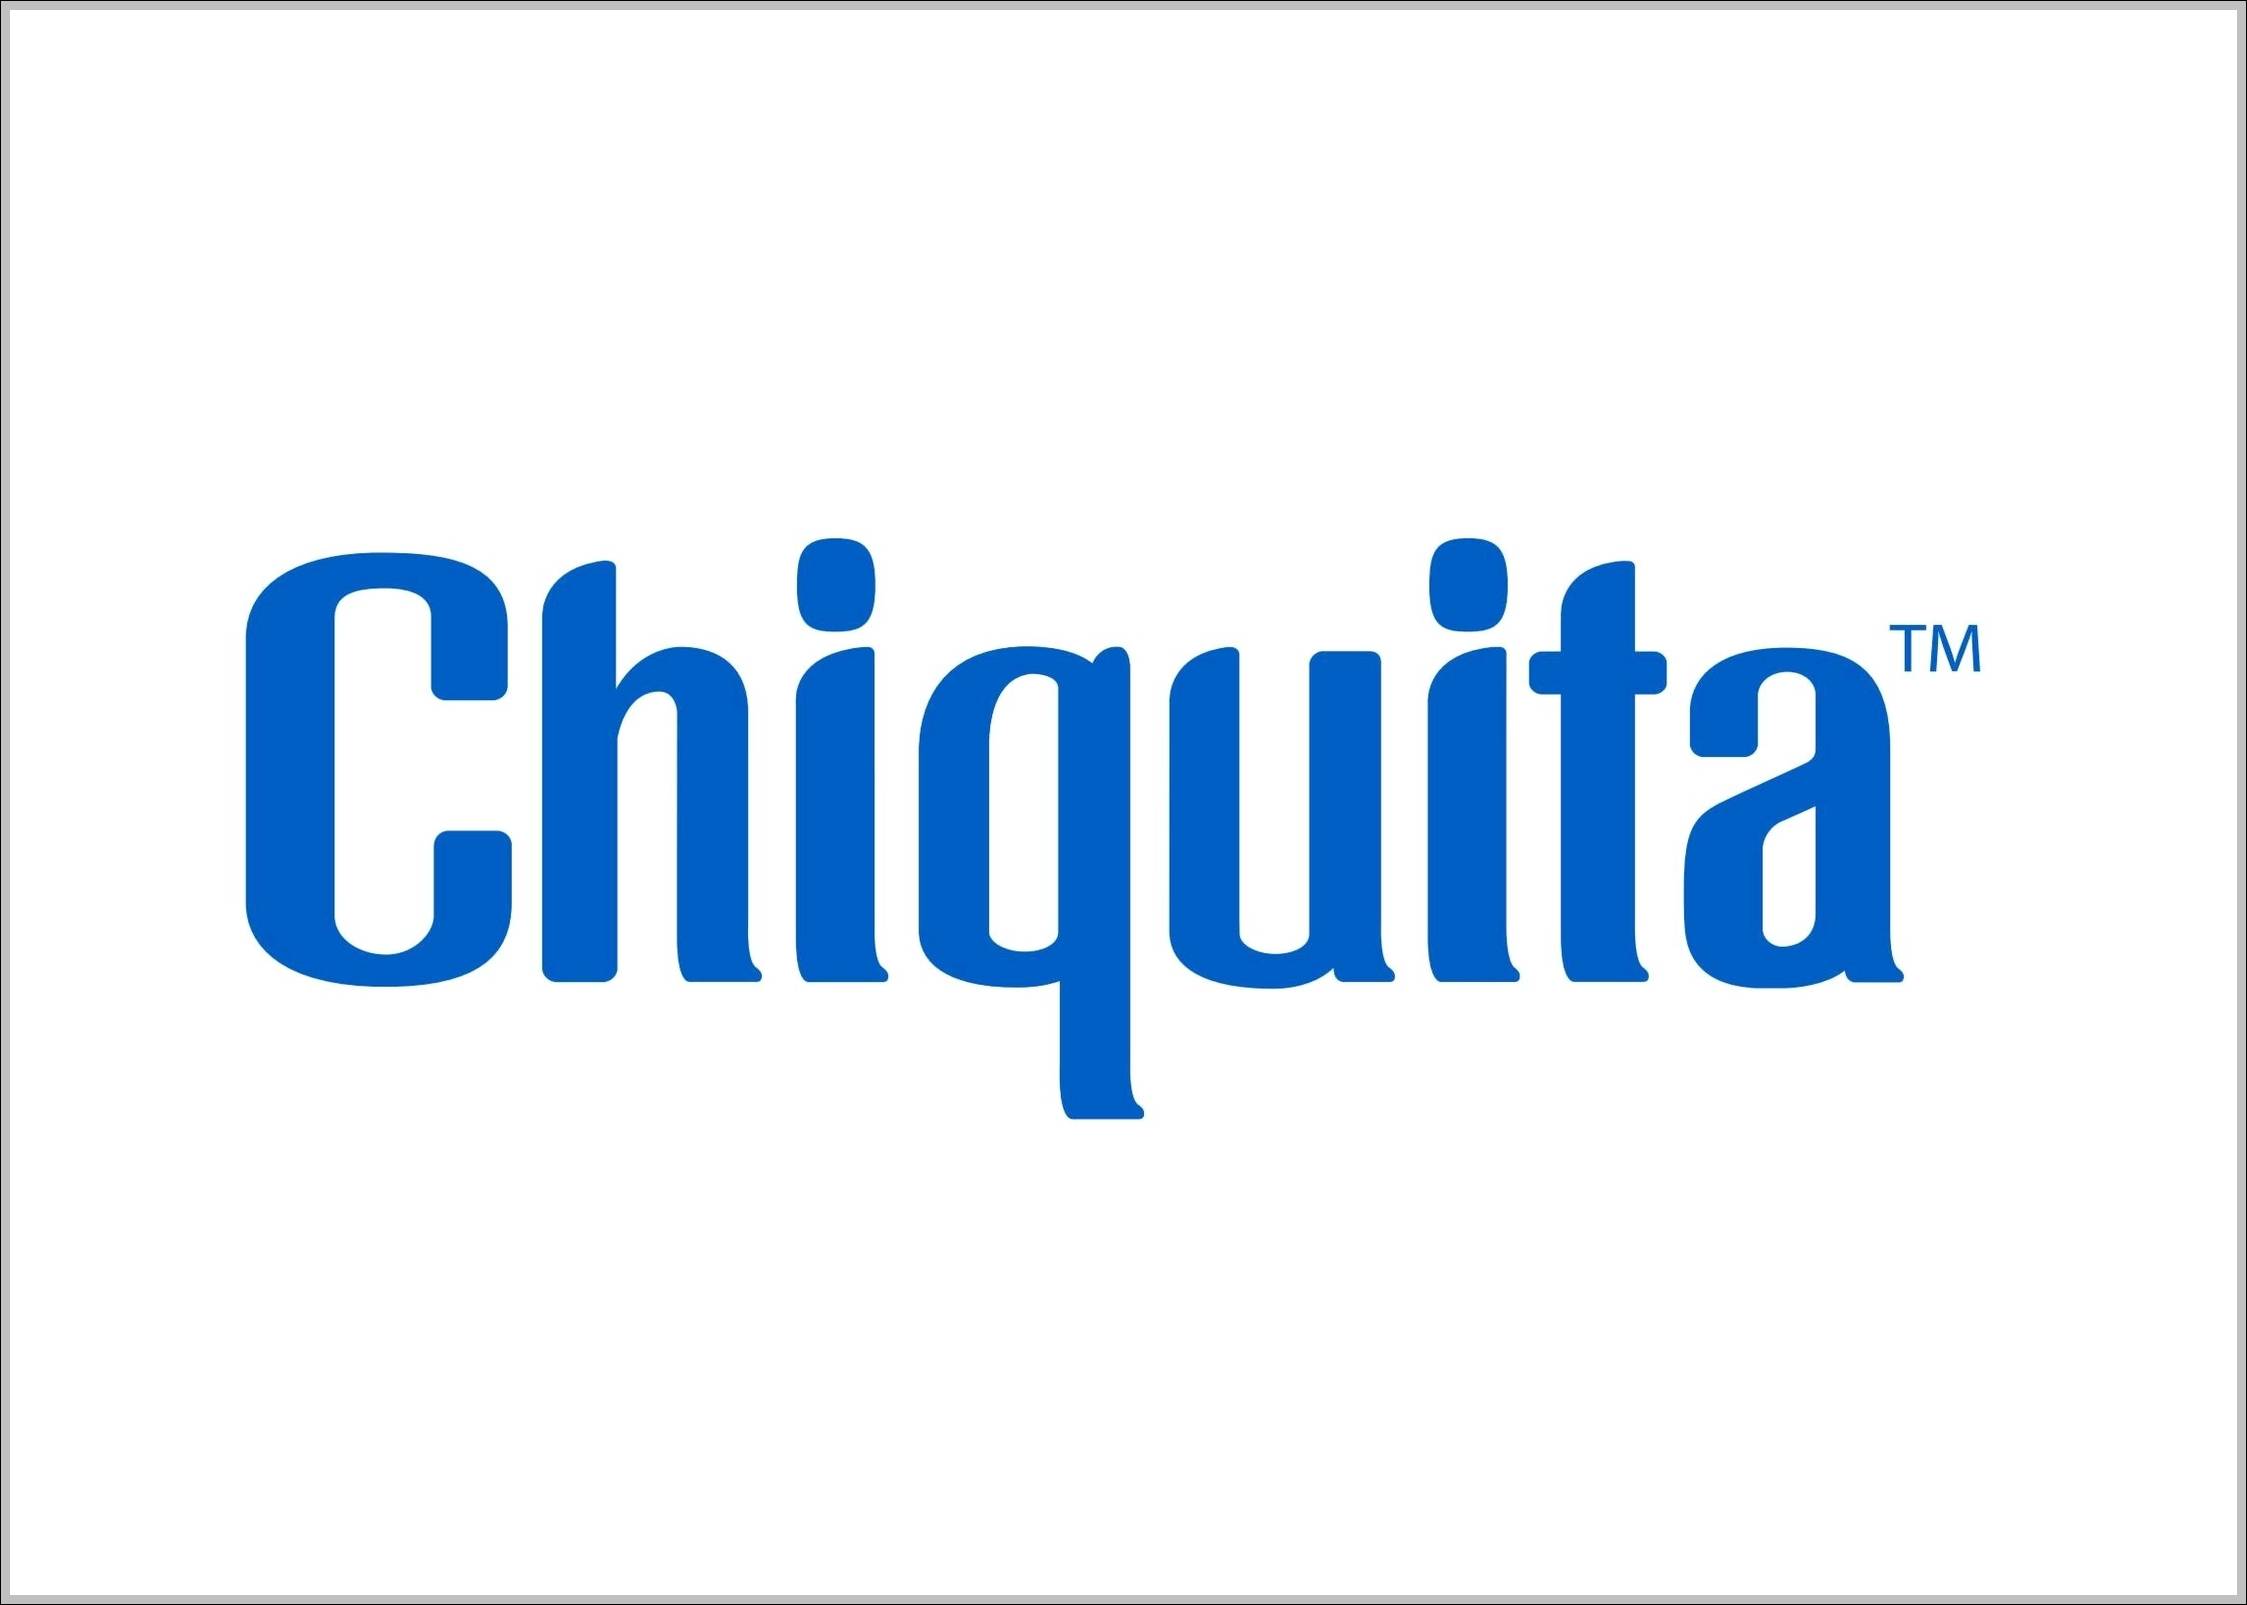 Chiquita sign